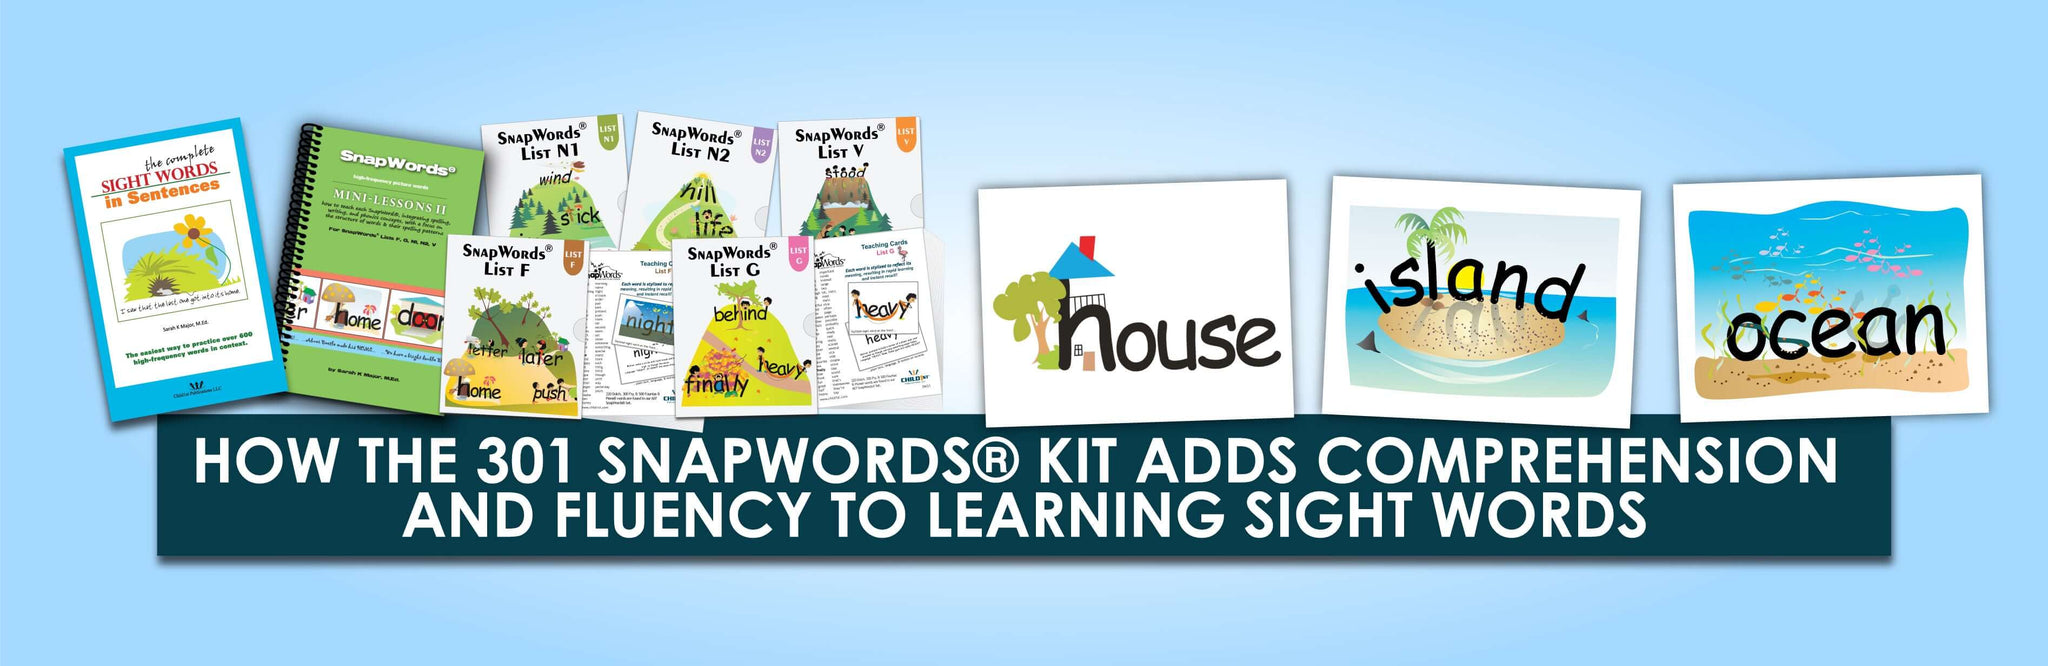 Cómo el kit 301 SnapWords® agrega comprensión y fluidez al aprendizaje de palabras de uso frecuente